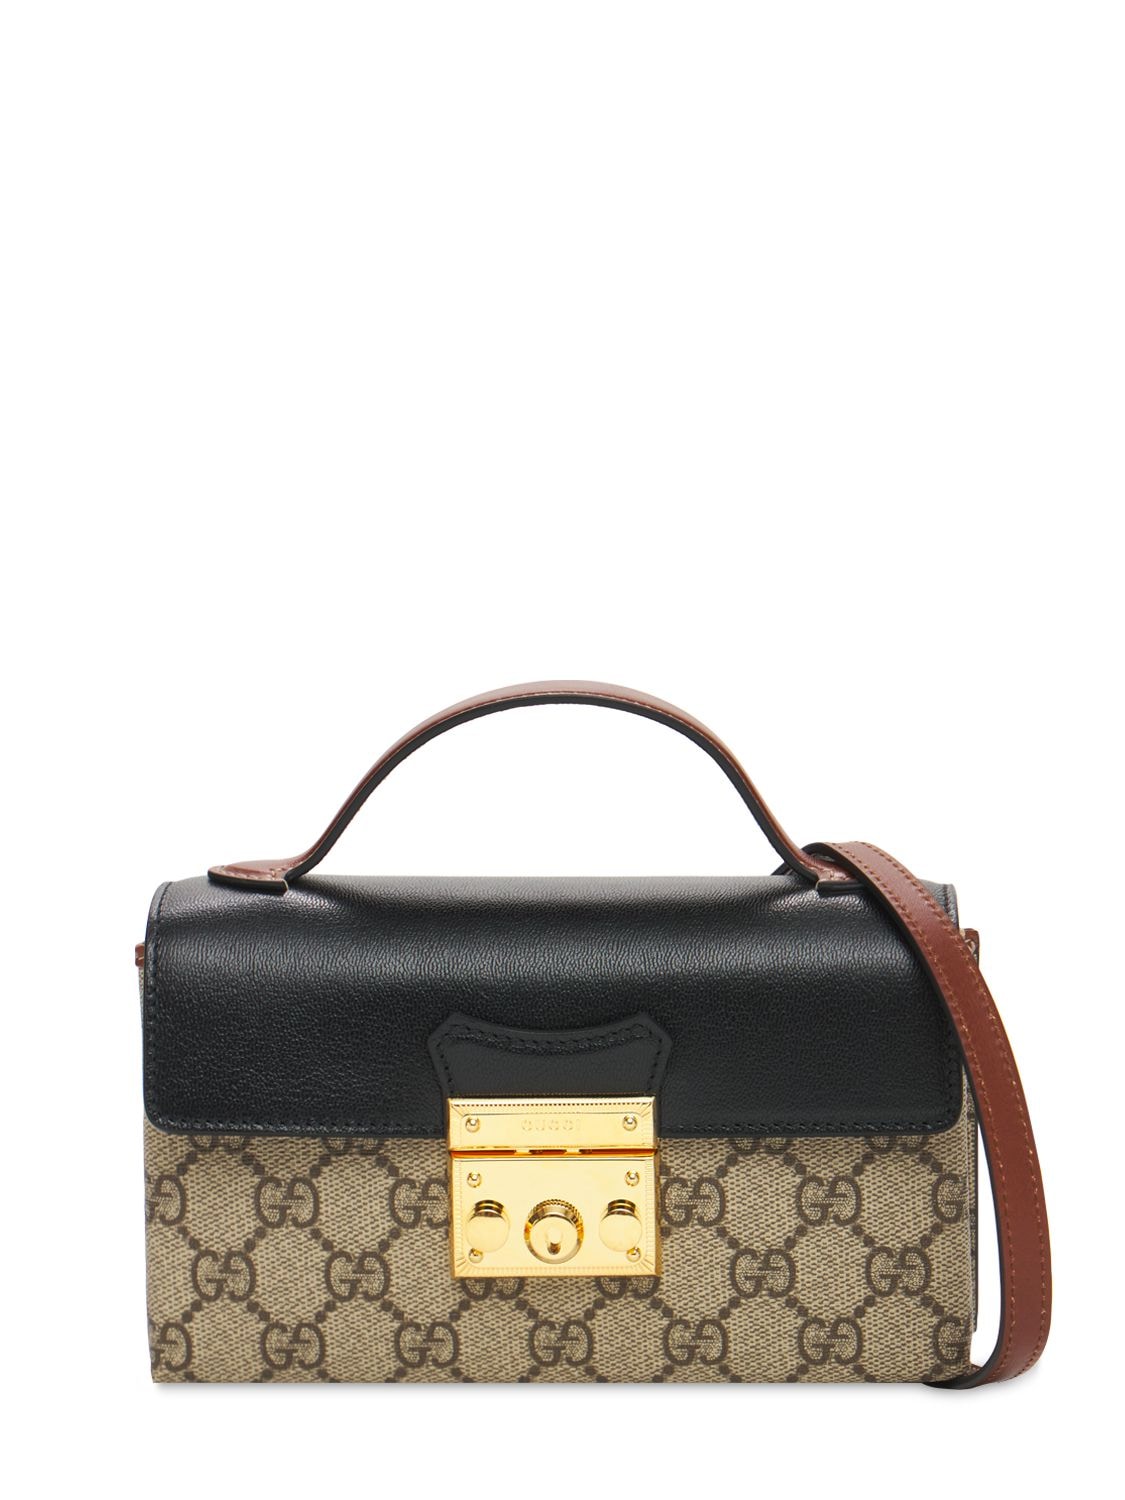 Gucci Mini Padlock Gg Supreme Canvas Bag In Ebony,nero